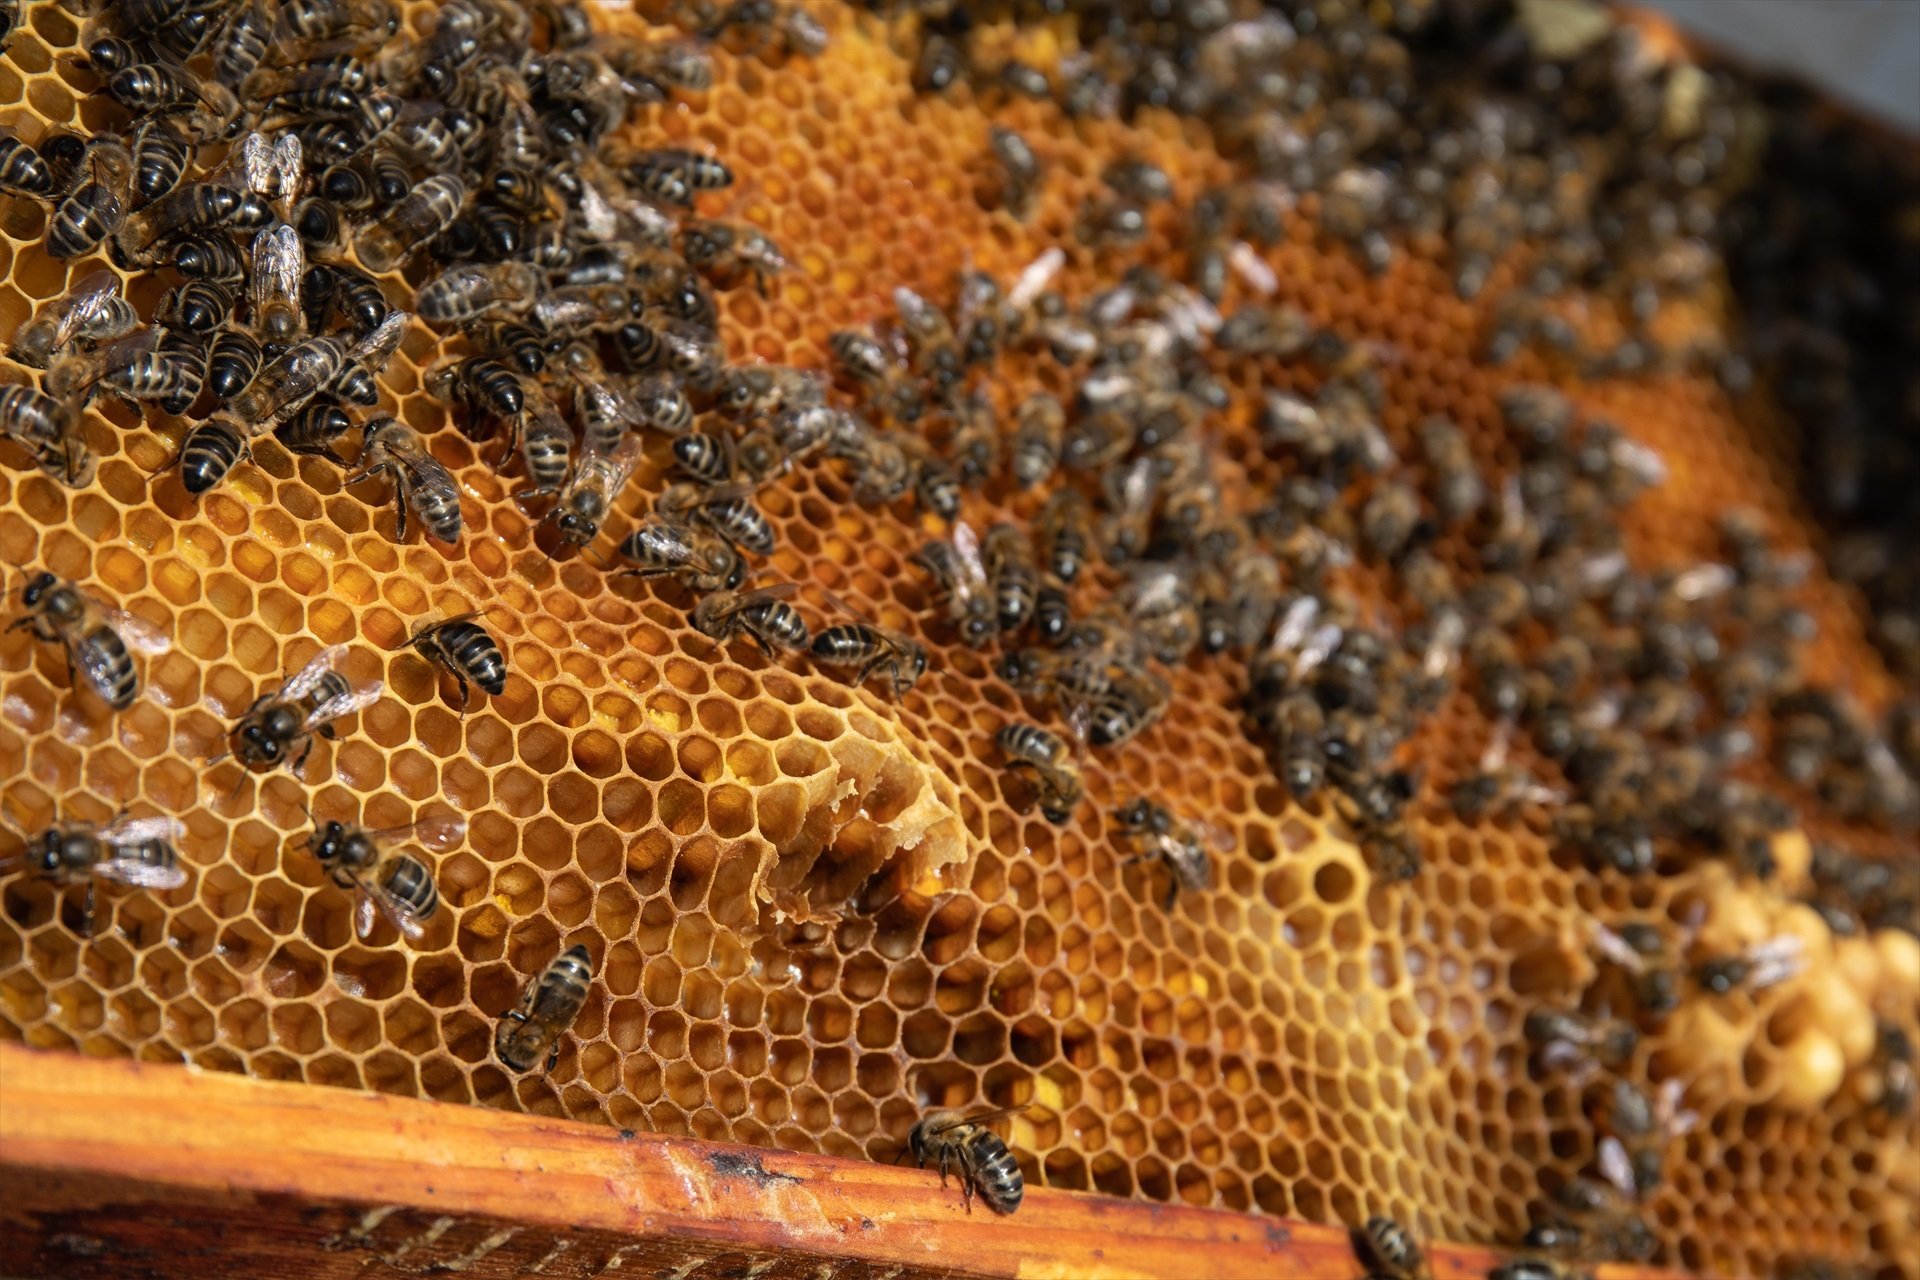 La mel espanyola en risc: producció al 50% i rècord d'importació de la Xina